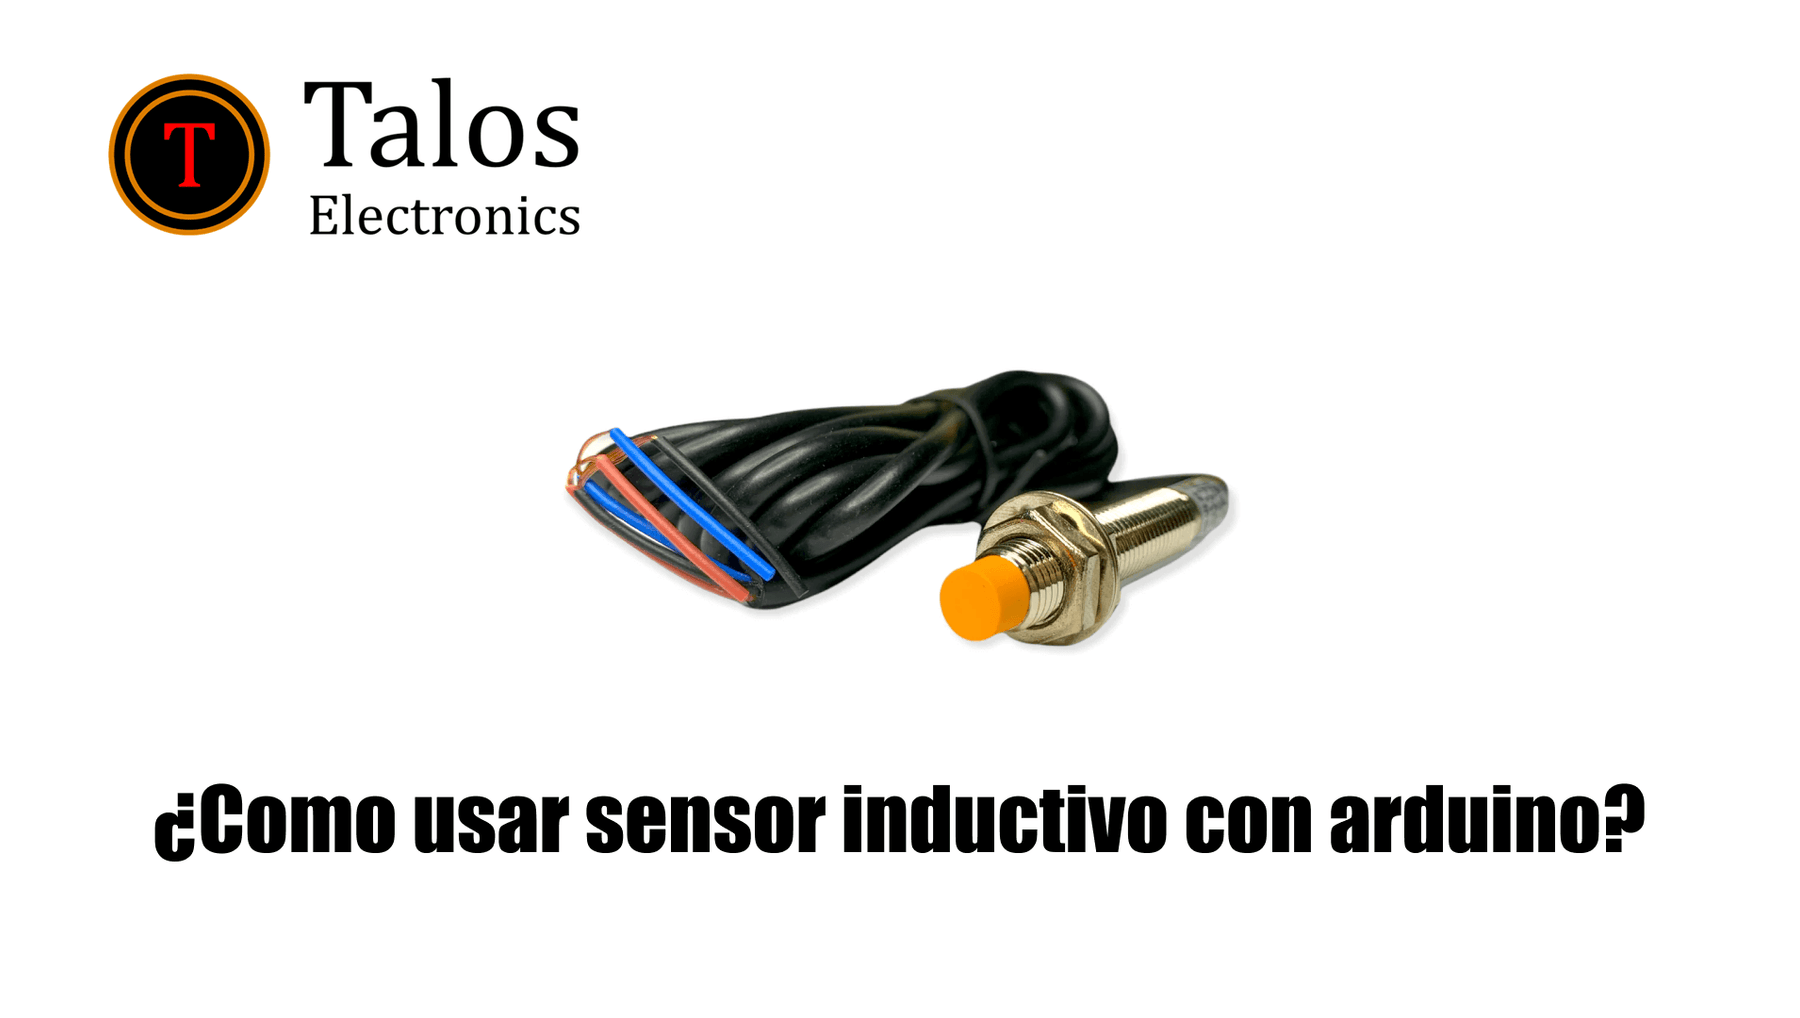 ¿Como usar sensor inductivo con arduino?